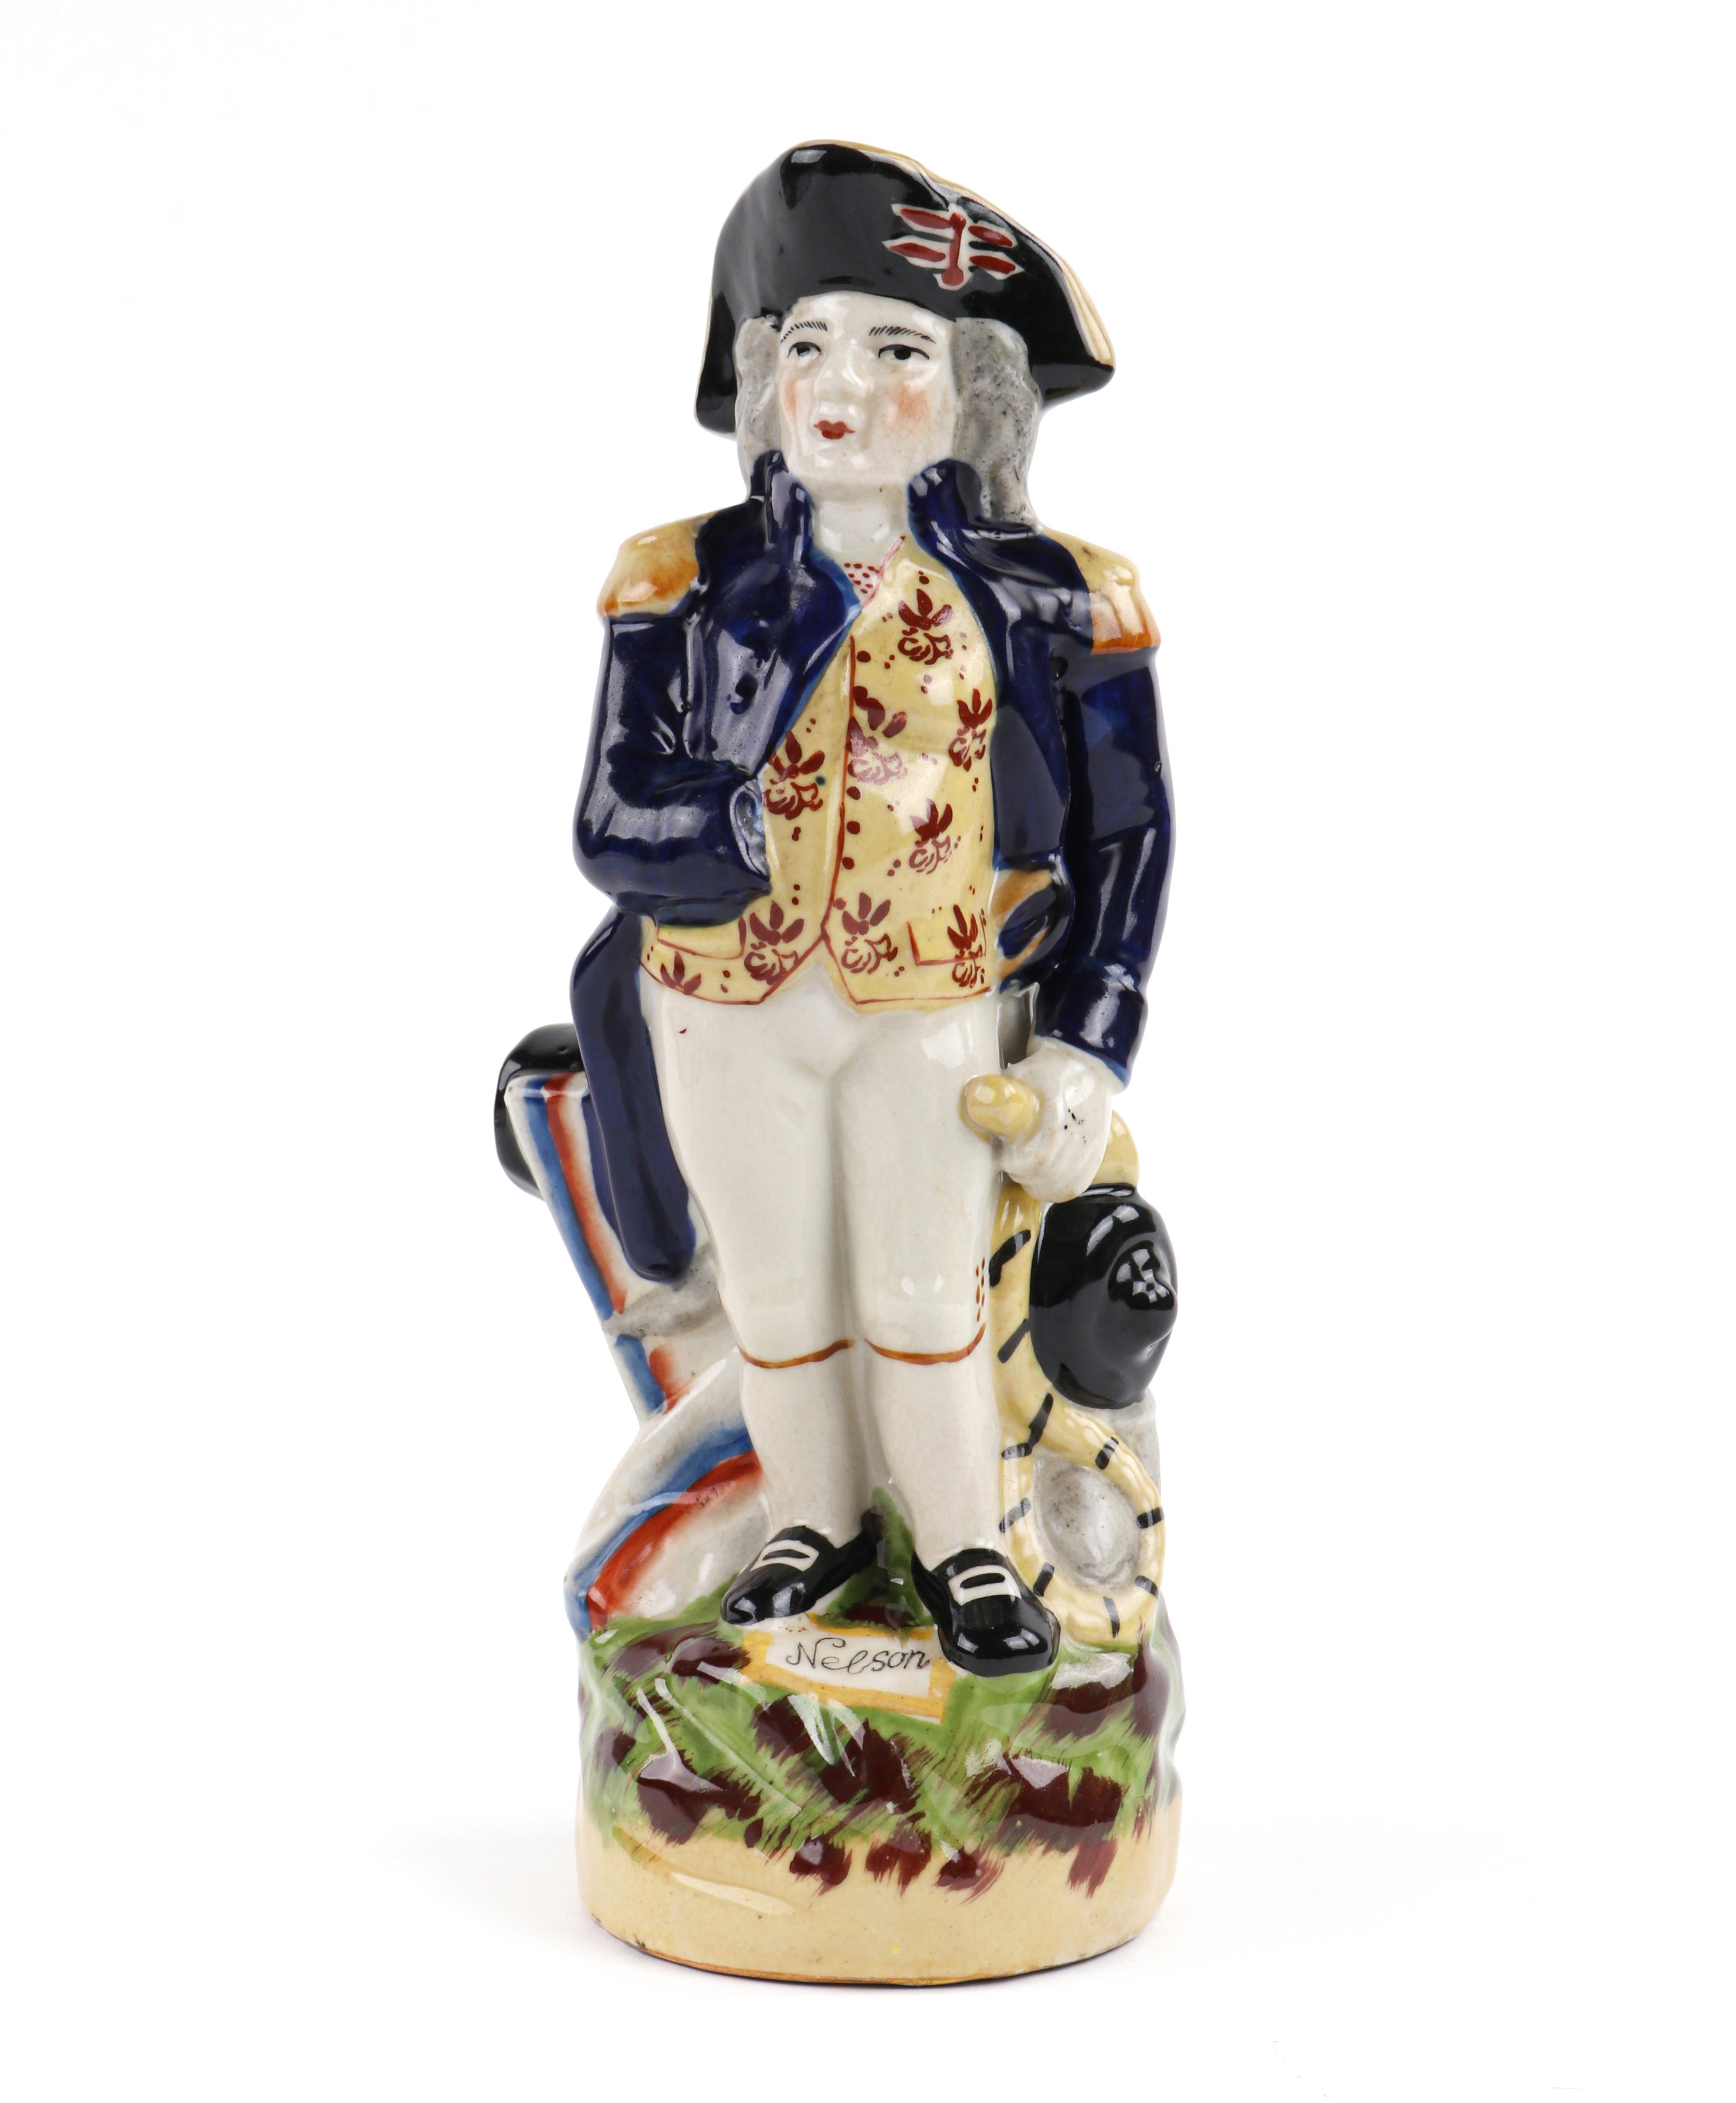 Antique Staffordshire Lord Horatio Nelson Hand Painted Toby Jug Pitcher Figure

Ce pichet ancien sculpté représente le vice-amiral Horatio Nelson (britannique, 1758-1805). Il se tient devant un canon, la main droite glissée dans son gilet. Il